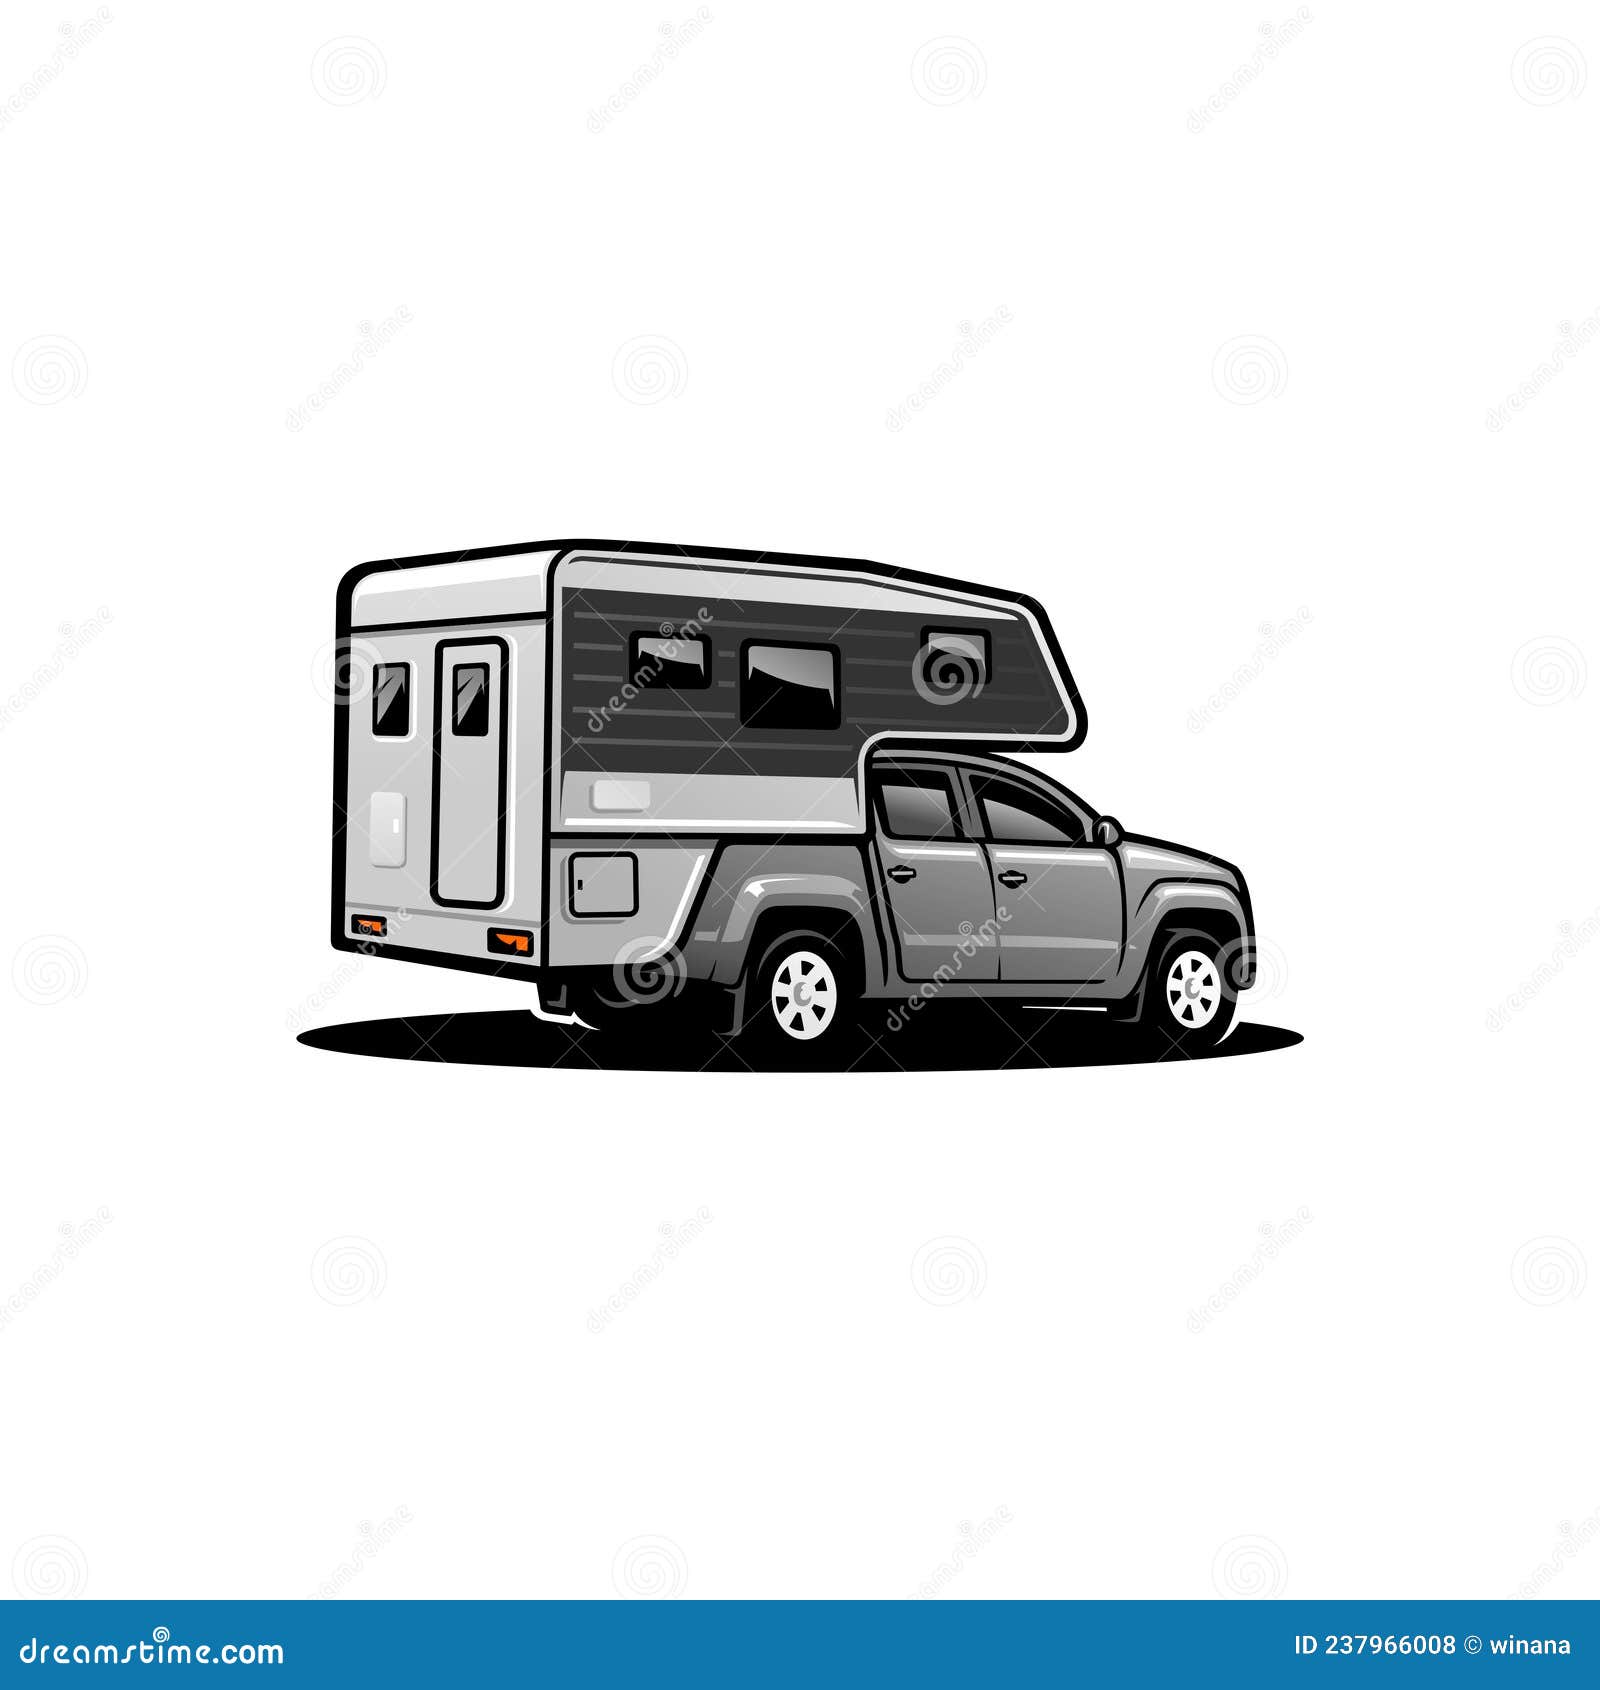 SUV Car, Camper Truck, Camper Van Illustration Vector Stock Vector ...